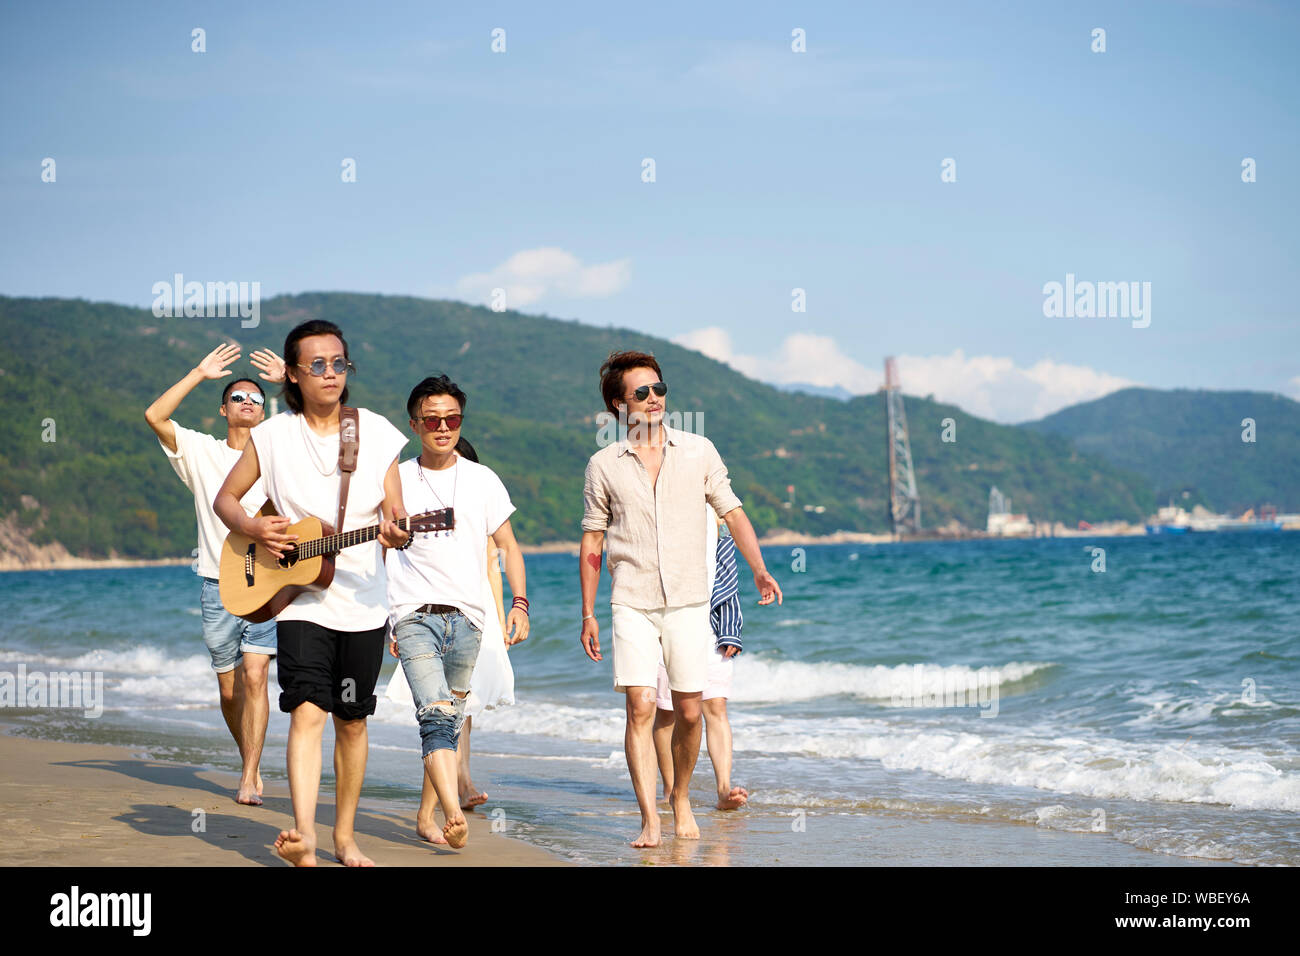 Groupe de jeunes adultes asiatiques men walking on beach à jouer de la guitare Banque D'Images